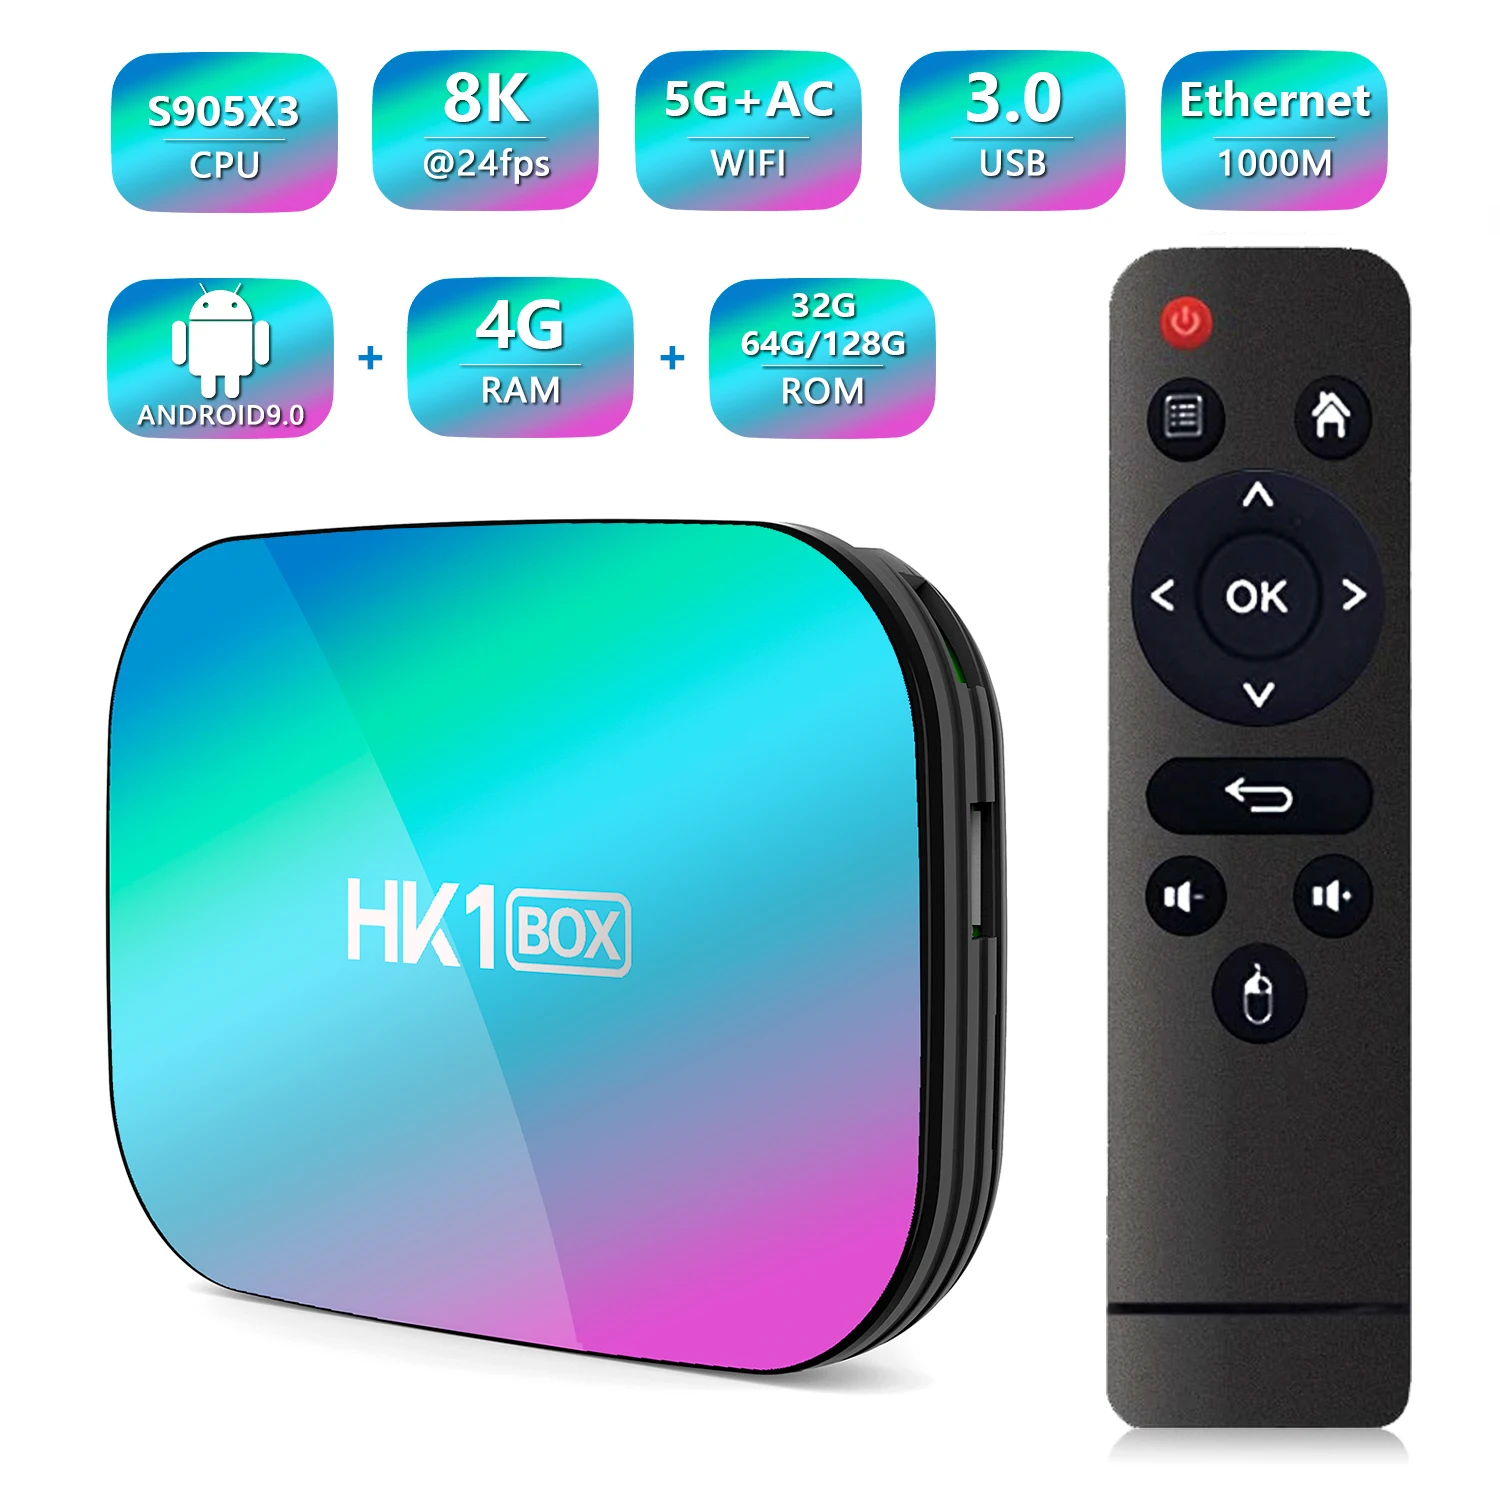 TV Box HK1 BOX Amlogic S905X3 Android 9.0 4GB RAM 64GB ROM 2.4G&5G Wifi BT Fast 8K Media Player Set Top Box PK X96 T95 MAX PLUS